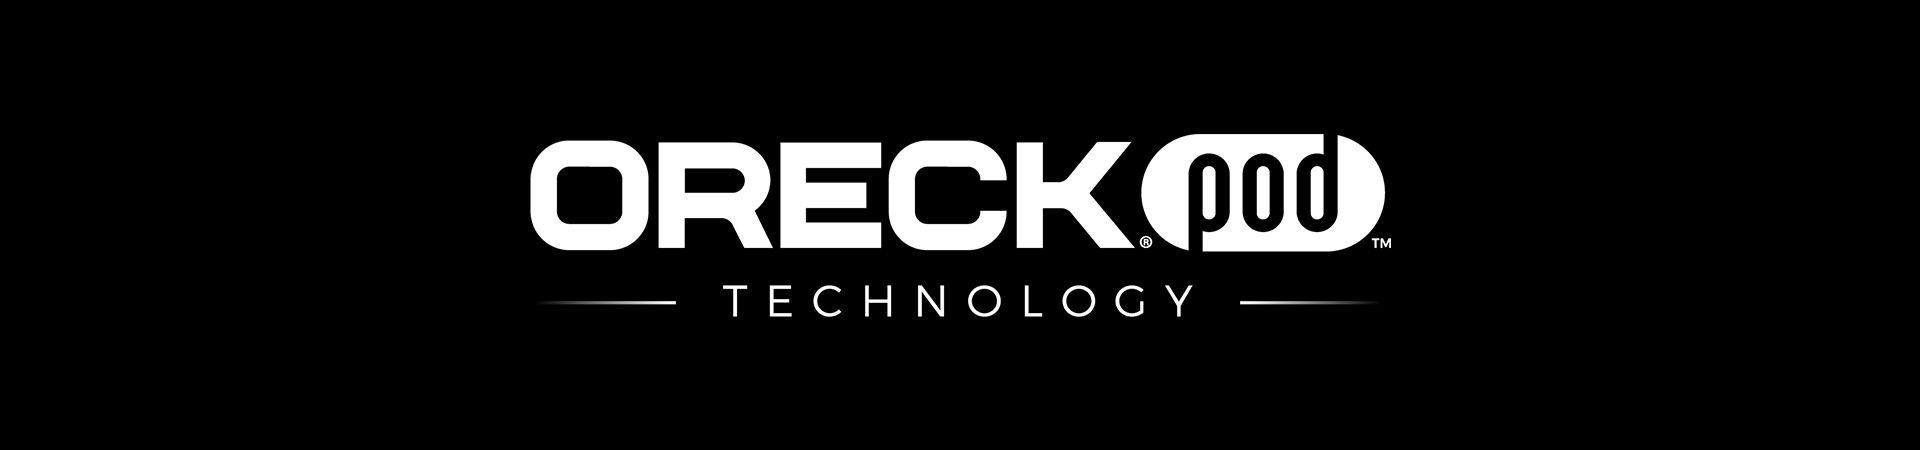 Oreck Logo - Find a Local Oreck Vacuum Store & Repair Center Near Me | Oreck